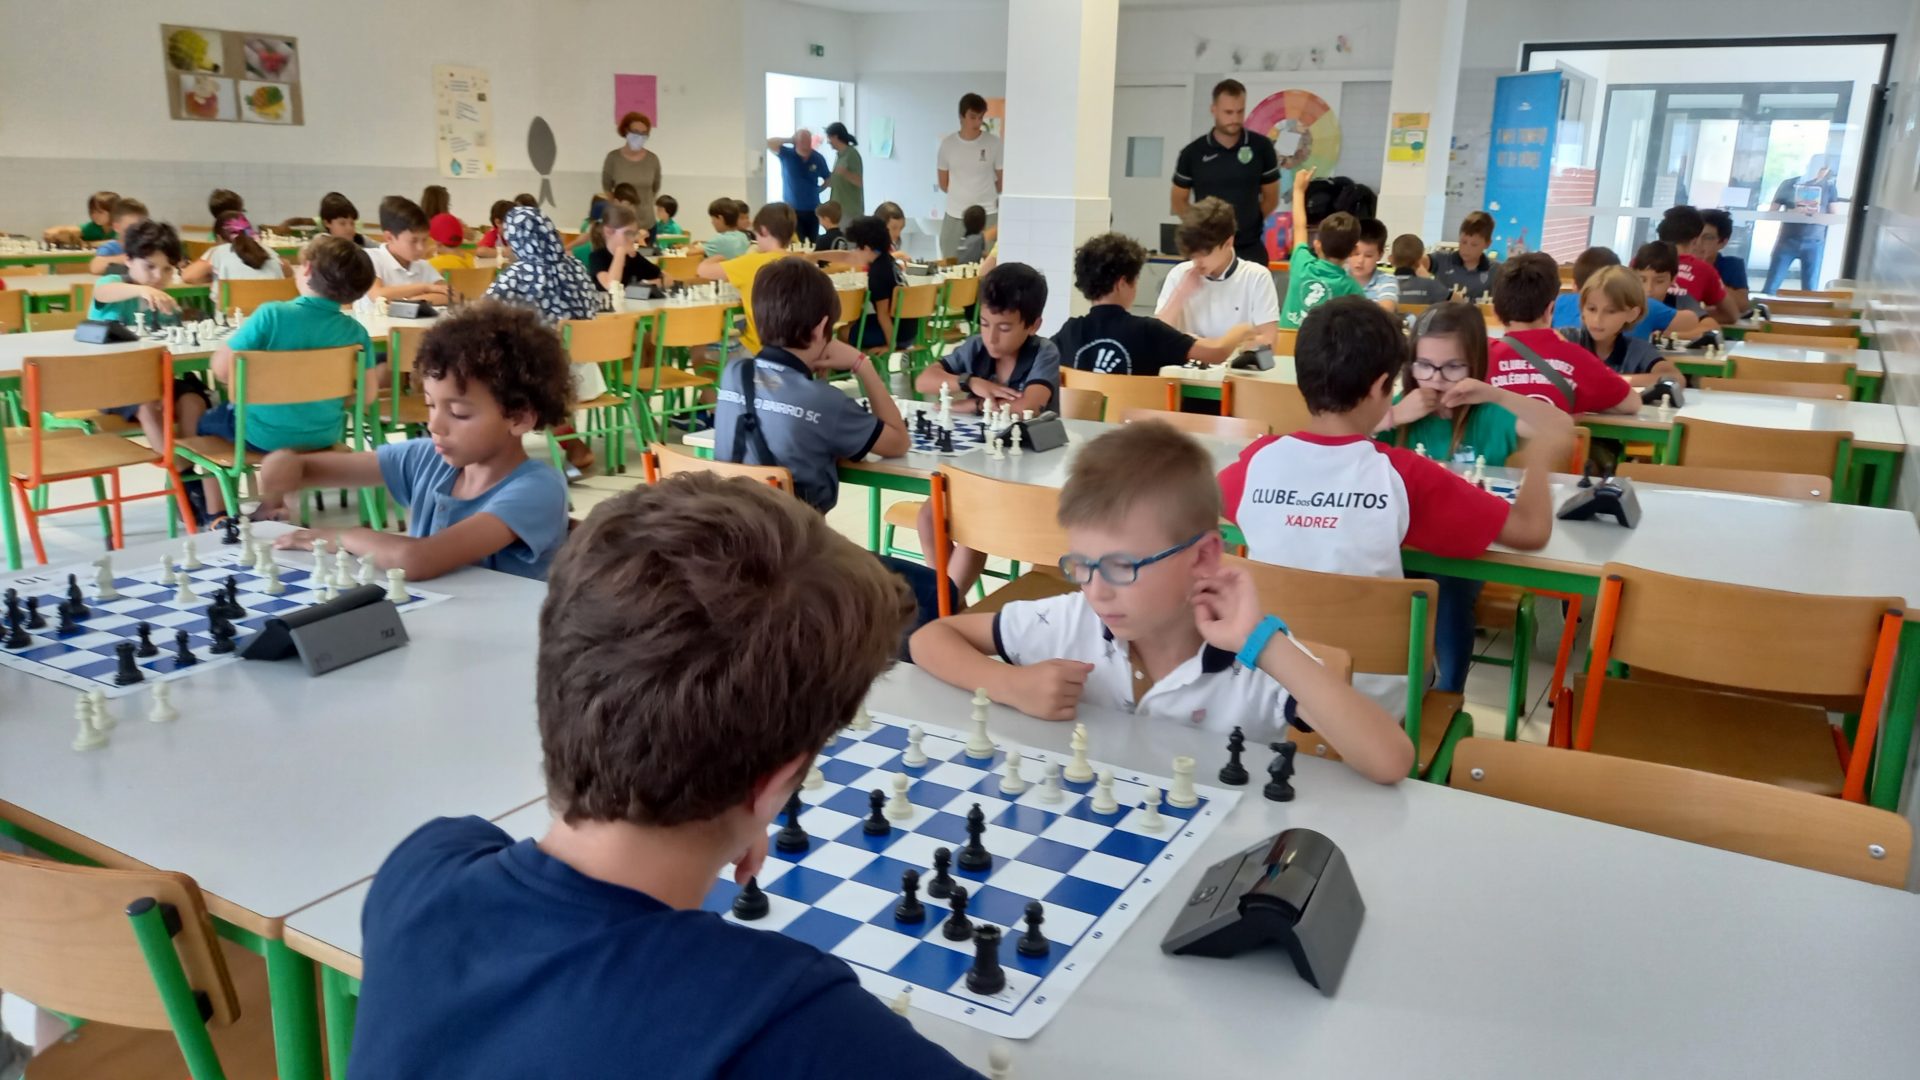 Campeonatos de Xadrez de Aveiro - fabrica - Universidade de Aveiro